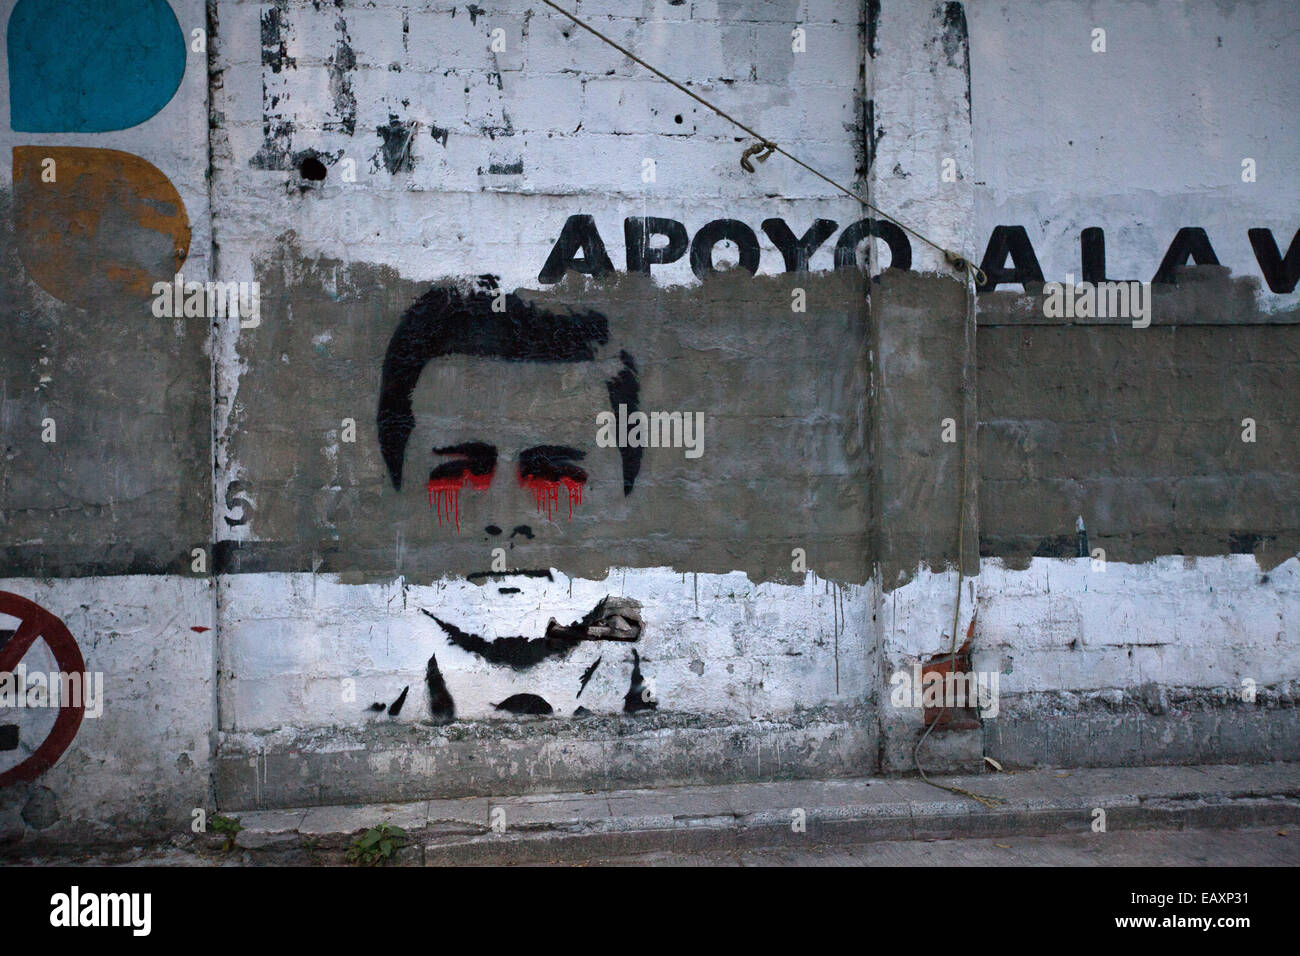 Graffiti of Mexico's President Enrique Pena Nieto in the streets of Mexico City. Stock Photo